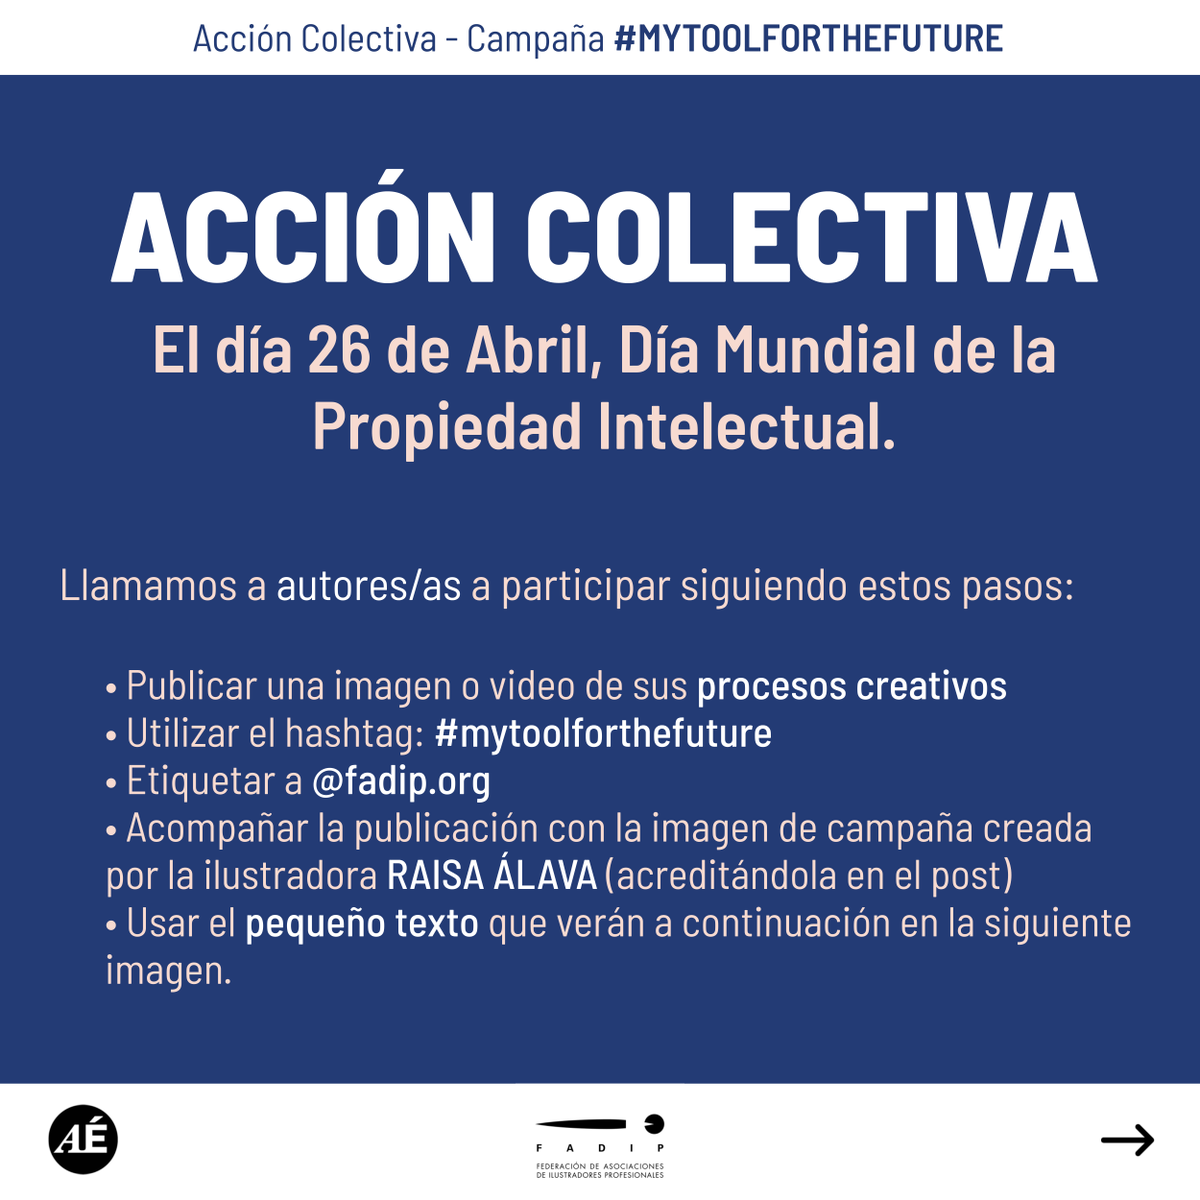 🔵 ACCIÓN COLECTIVA. Campaña #mytoolforthefuture organizada por FADIP 📌El día 26 de Abril, Día Mundial de la Propiedad Intelectual. 📢Llamamos a autores/as a participar siguiendo estos pasos: